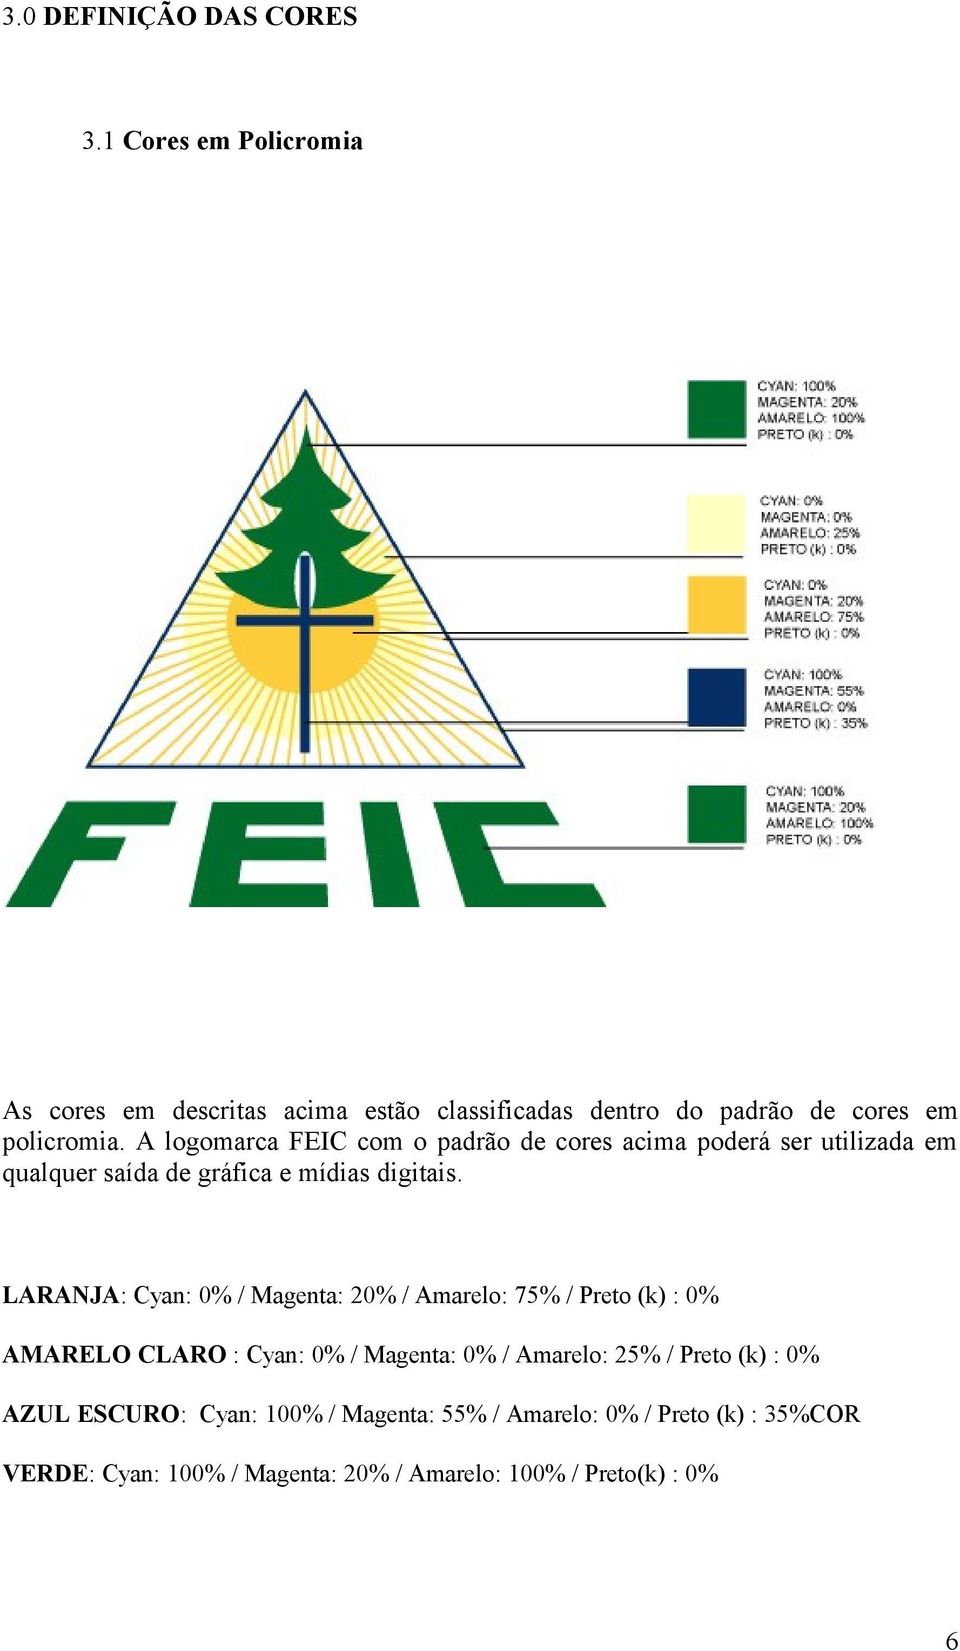 A logomarca FEIC com o padrão de cores acima poderá ser utilizada em qualquer saída de gráfica e mídias digitais.